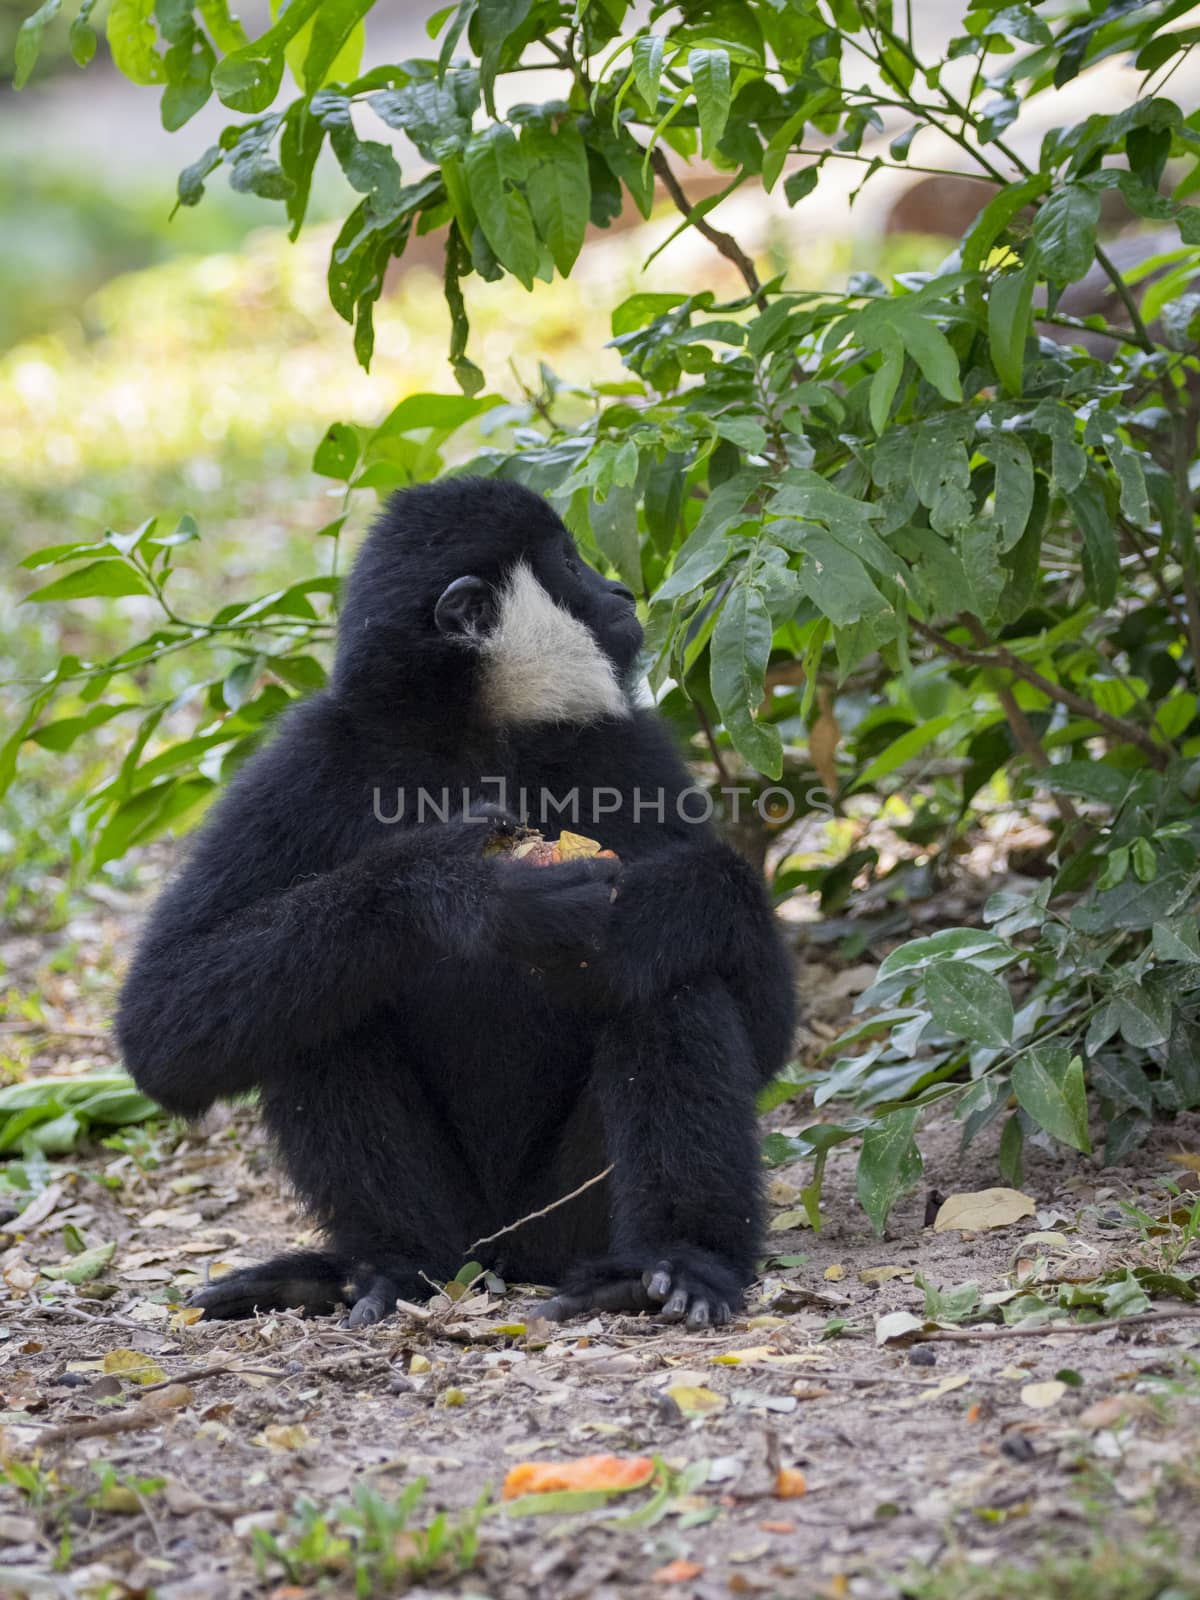 Image of black gibbon (White-Cheeked Gibbon) eating food on nature background. Wild Animals.